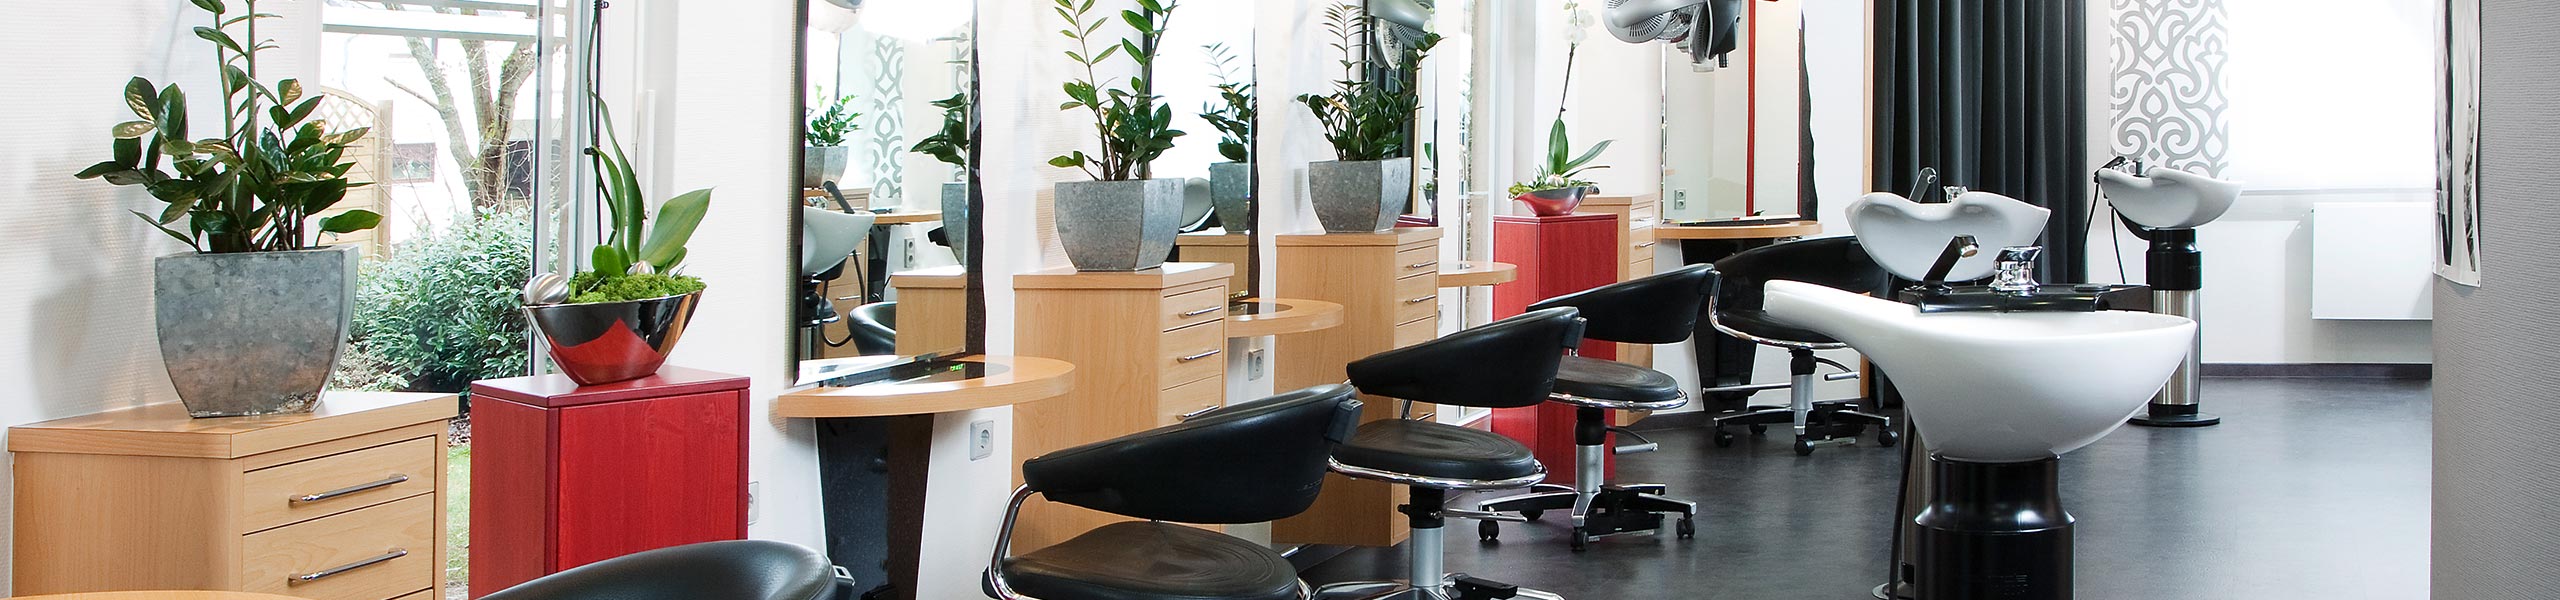 Friseur-Dienstleistungen in 74722 Buchenn - Hair & Beauty Gossenberger